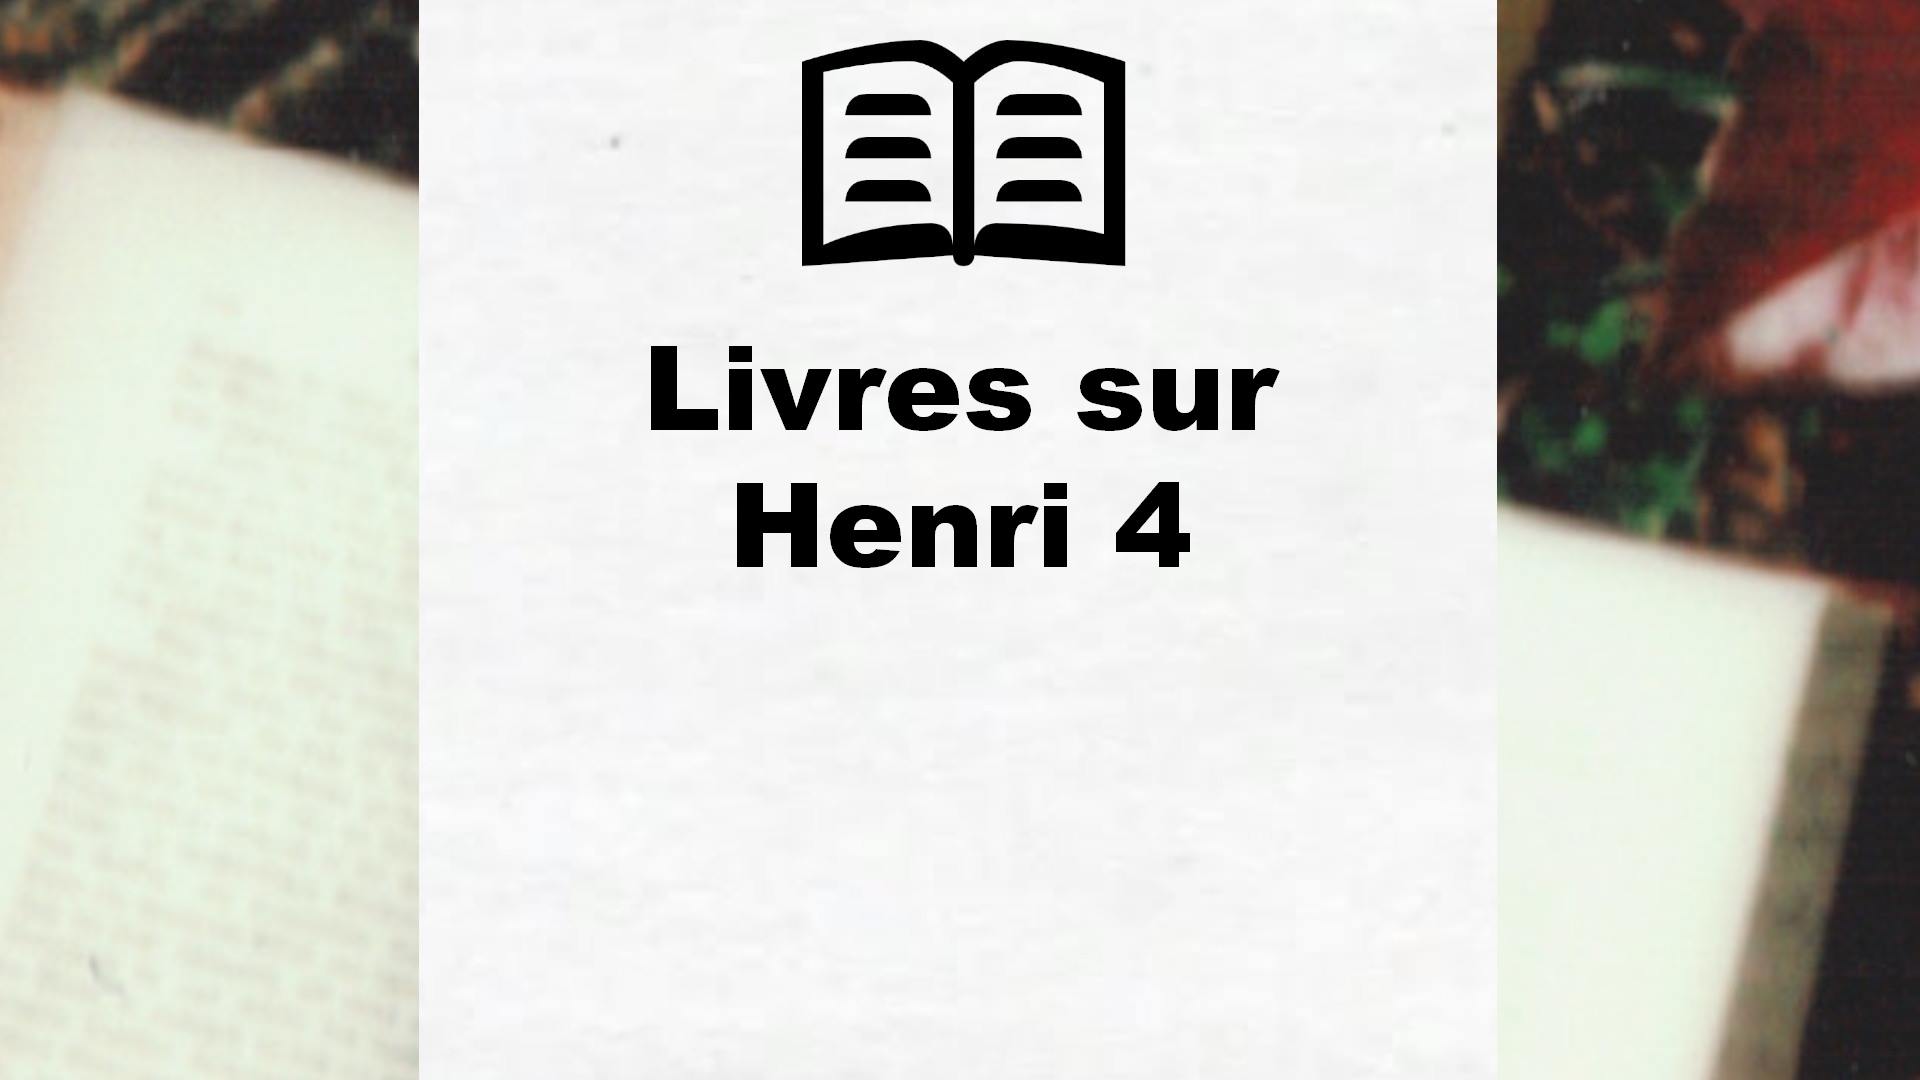 Livres sur Henri 4